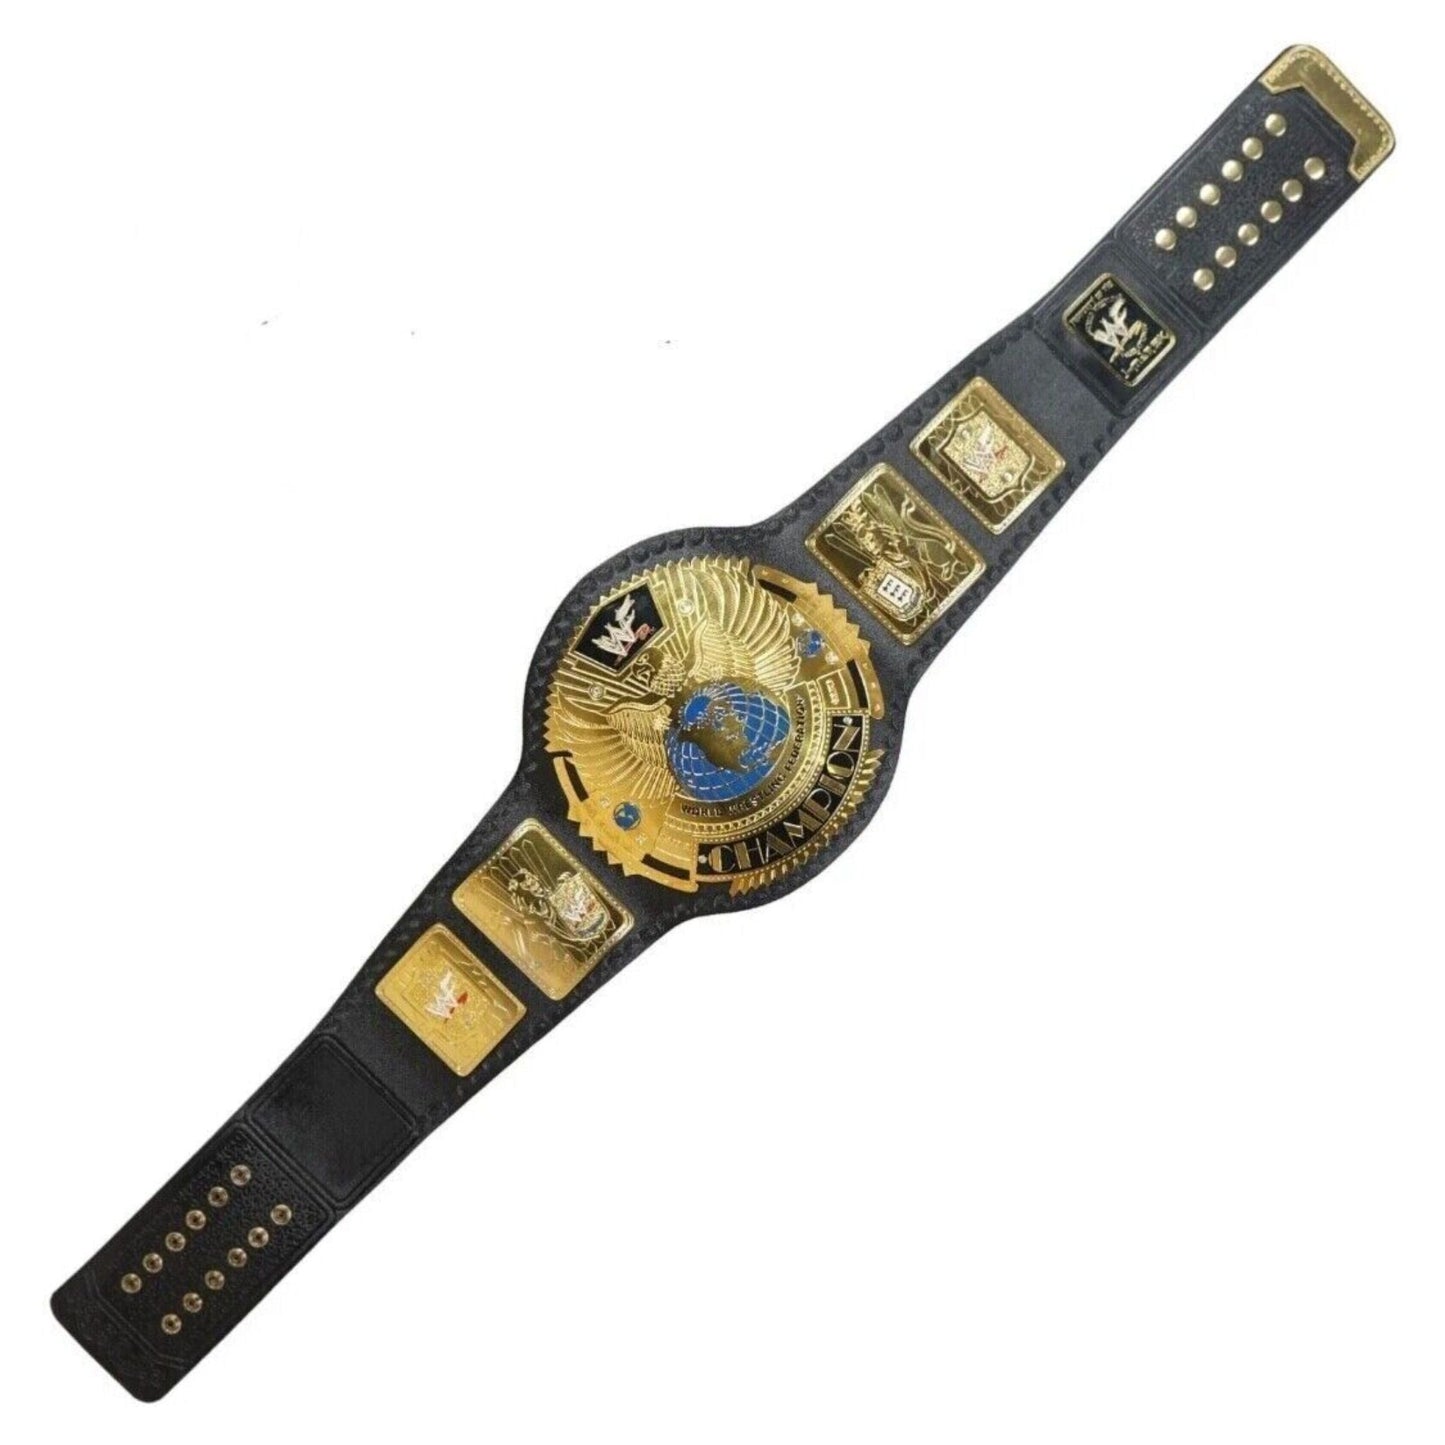 WWF Attitude Era Big Eagle Championship Replica Title Belt